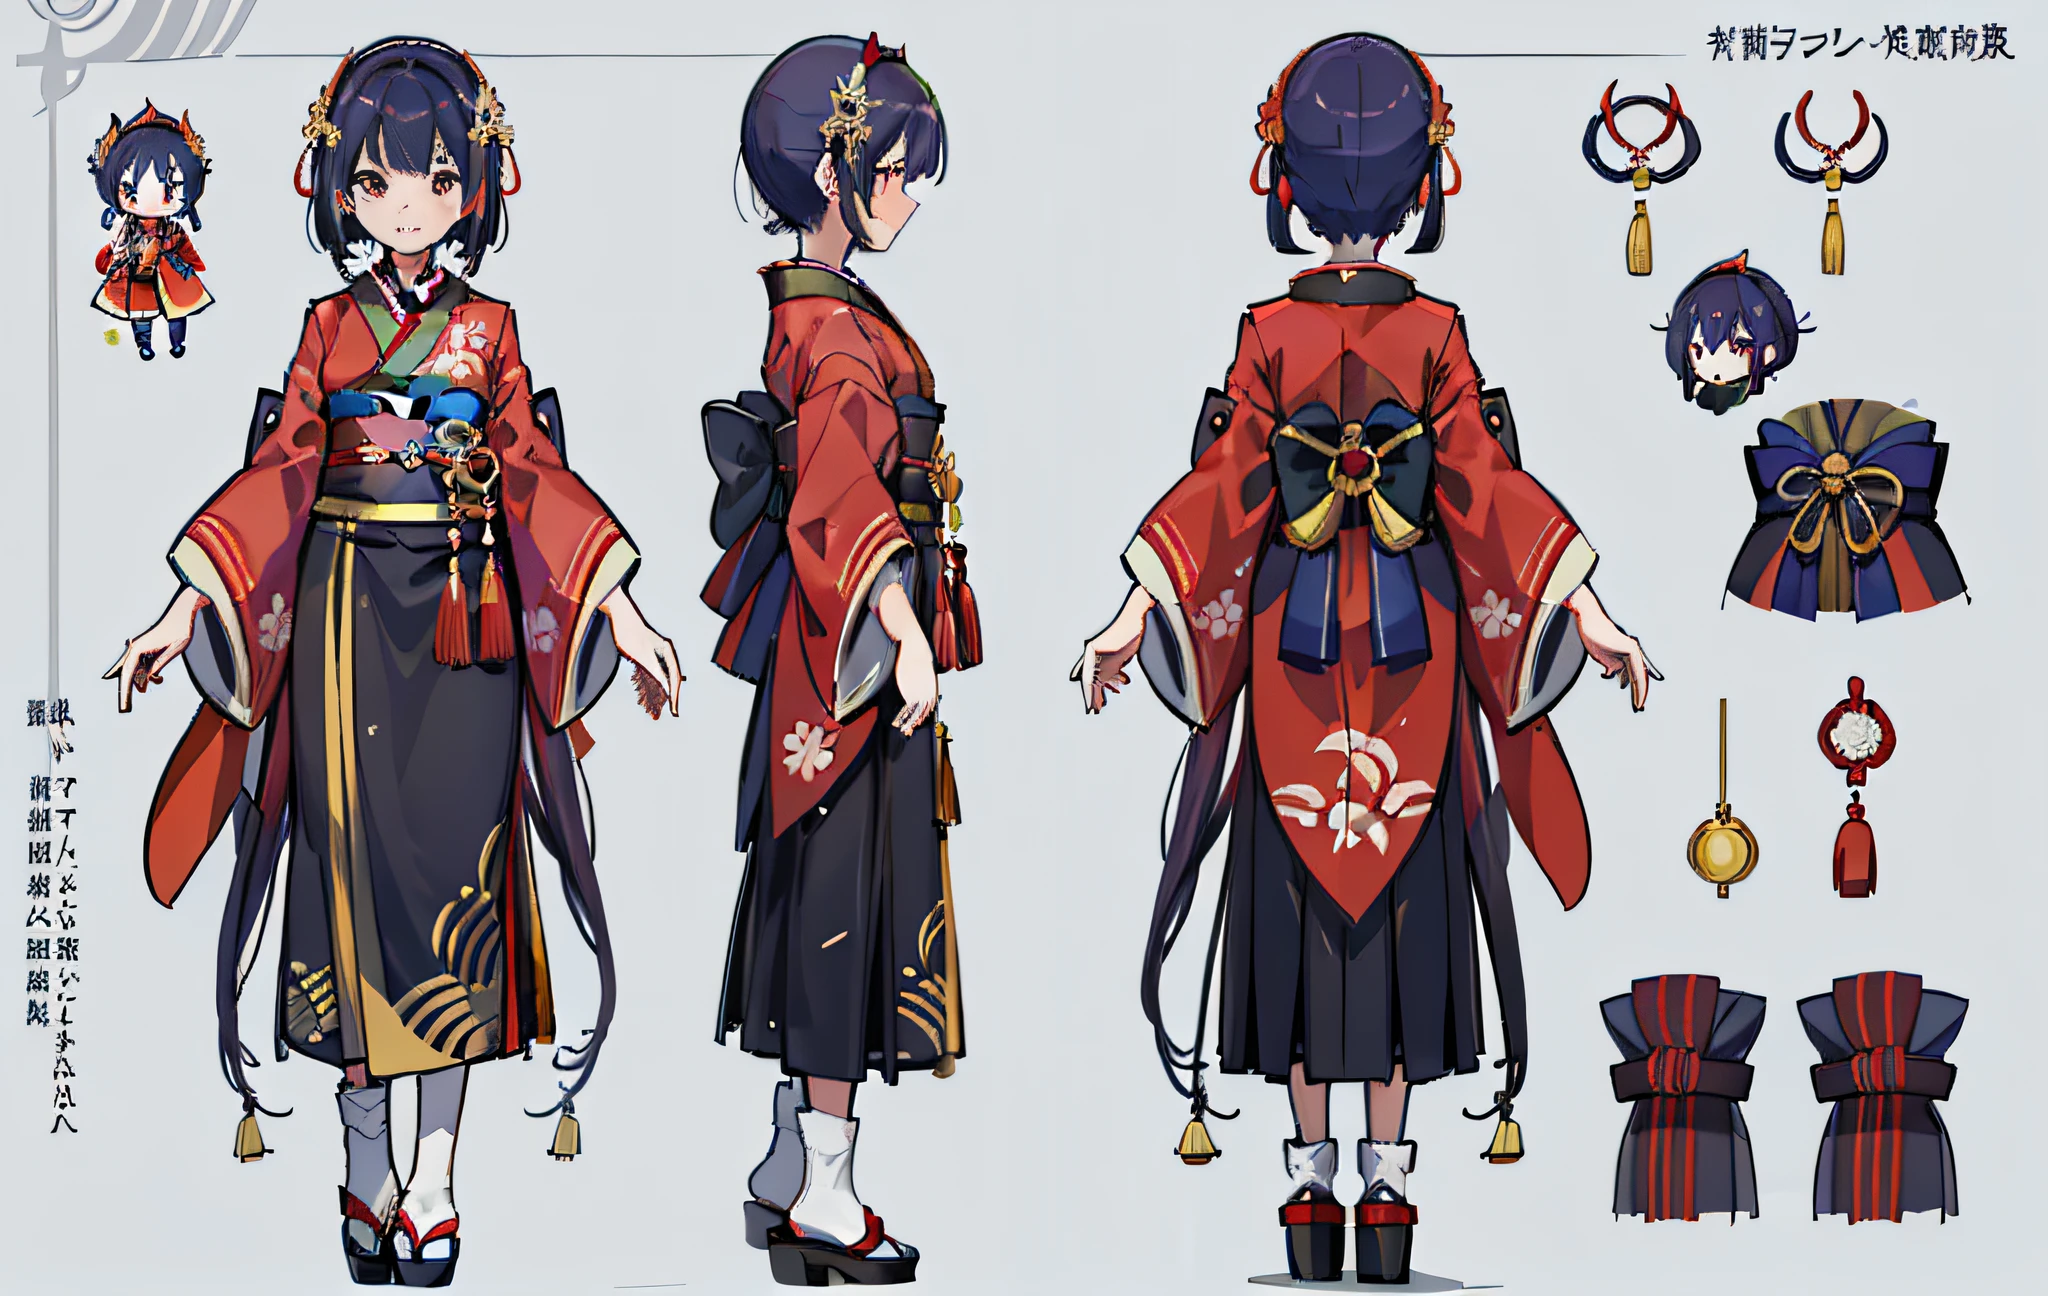 1人, 參考表, (奇幻角色設計, 正面, 後退, 邊) 女孩, 和服, 日本女神, royal 和服